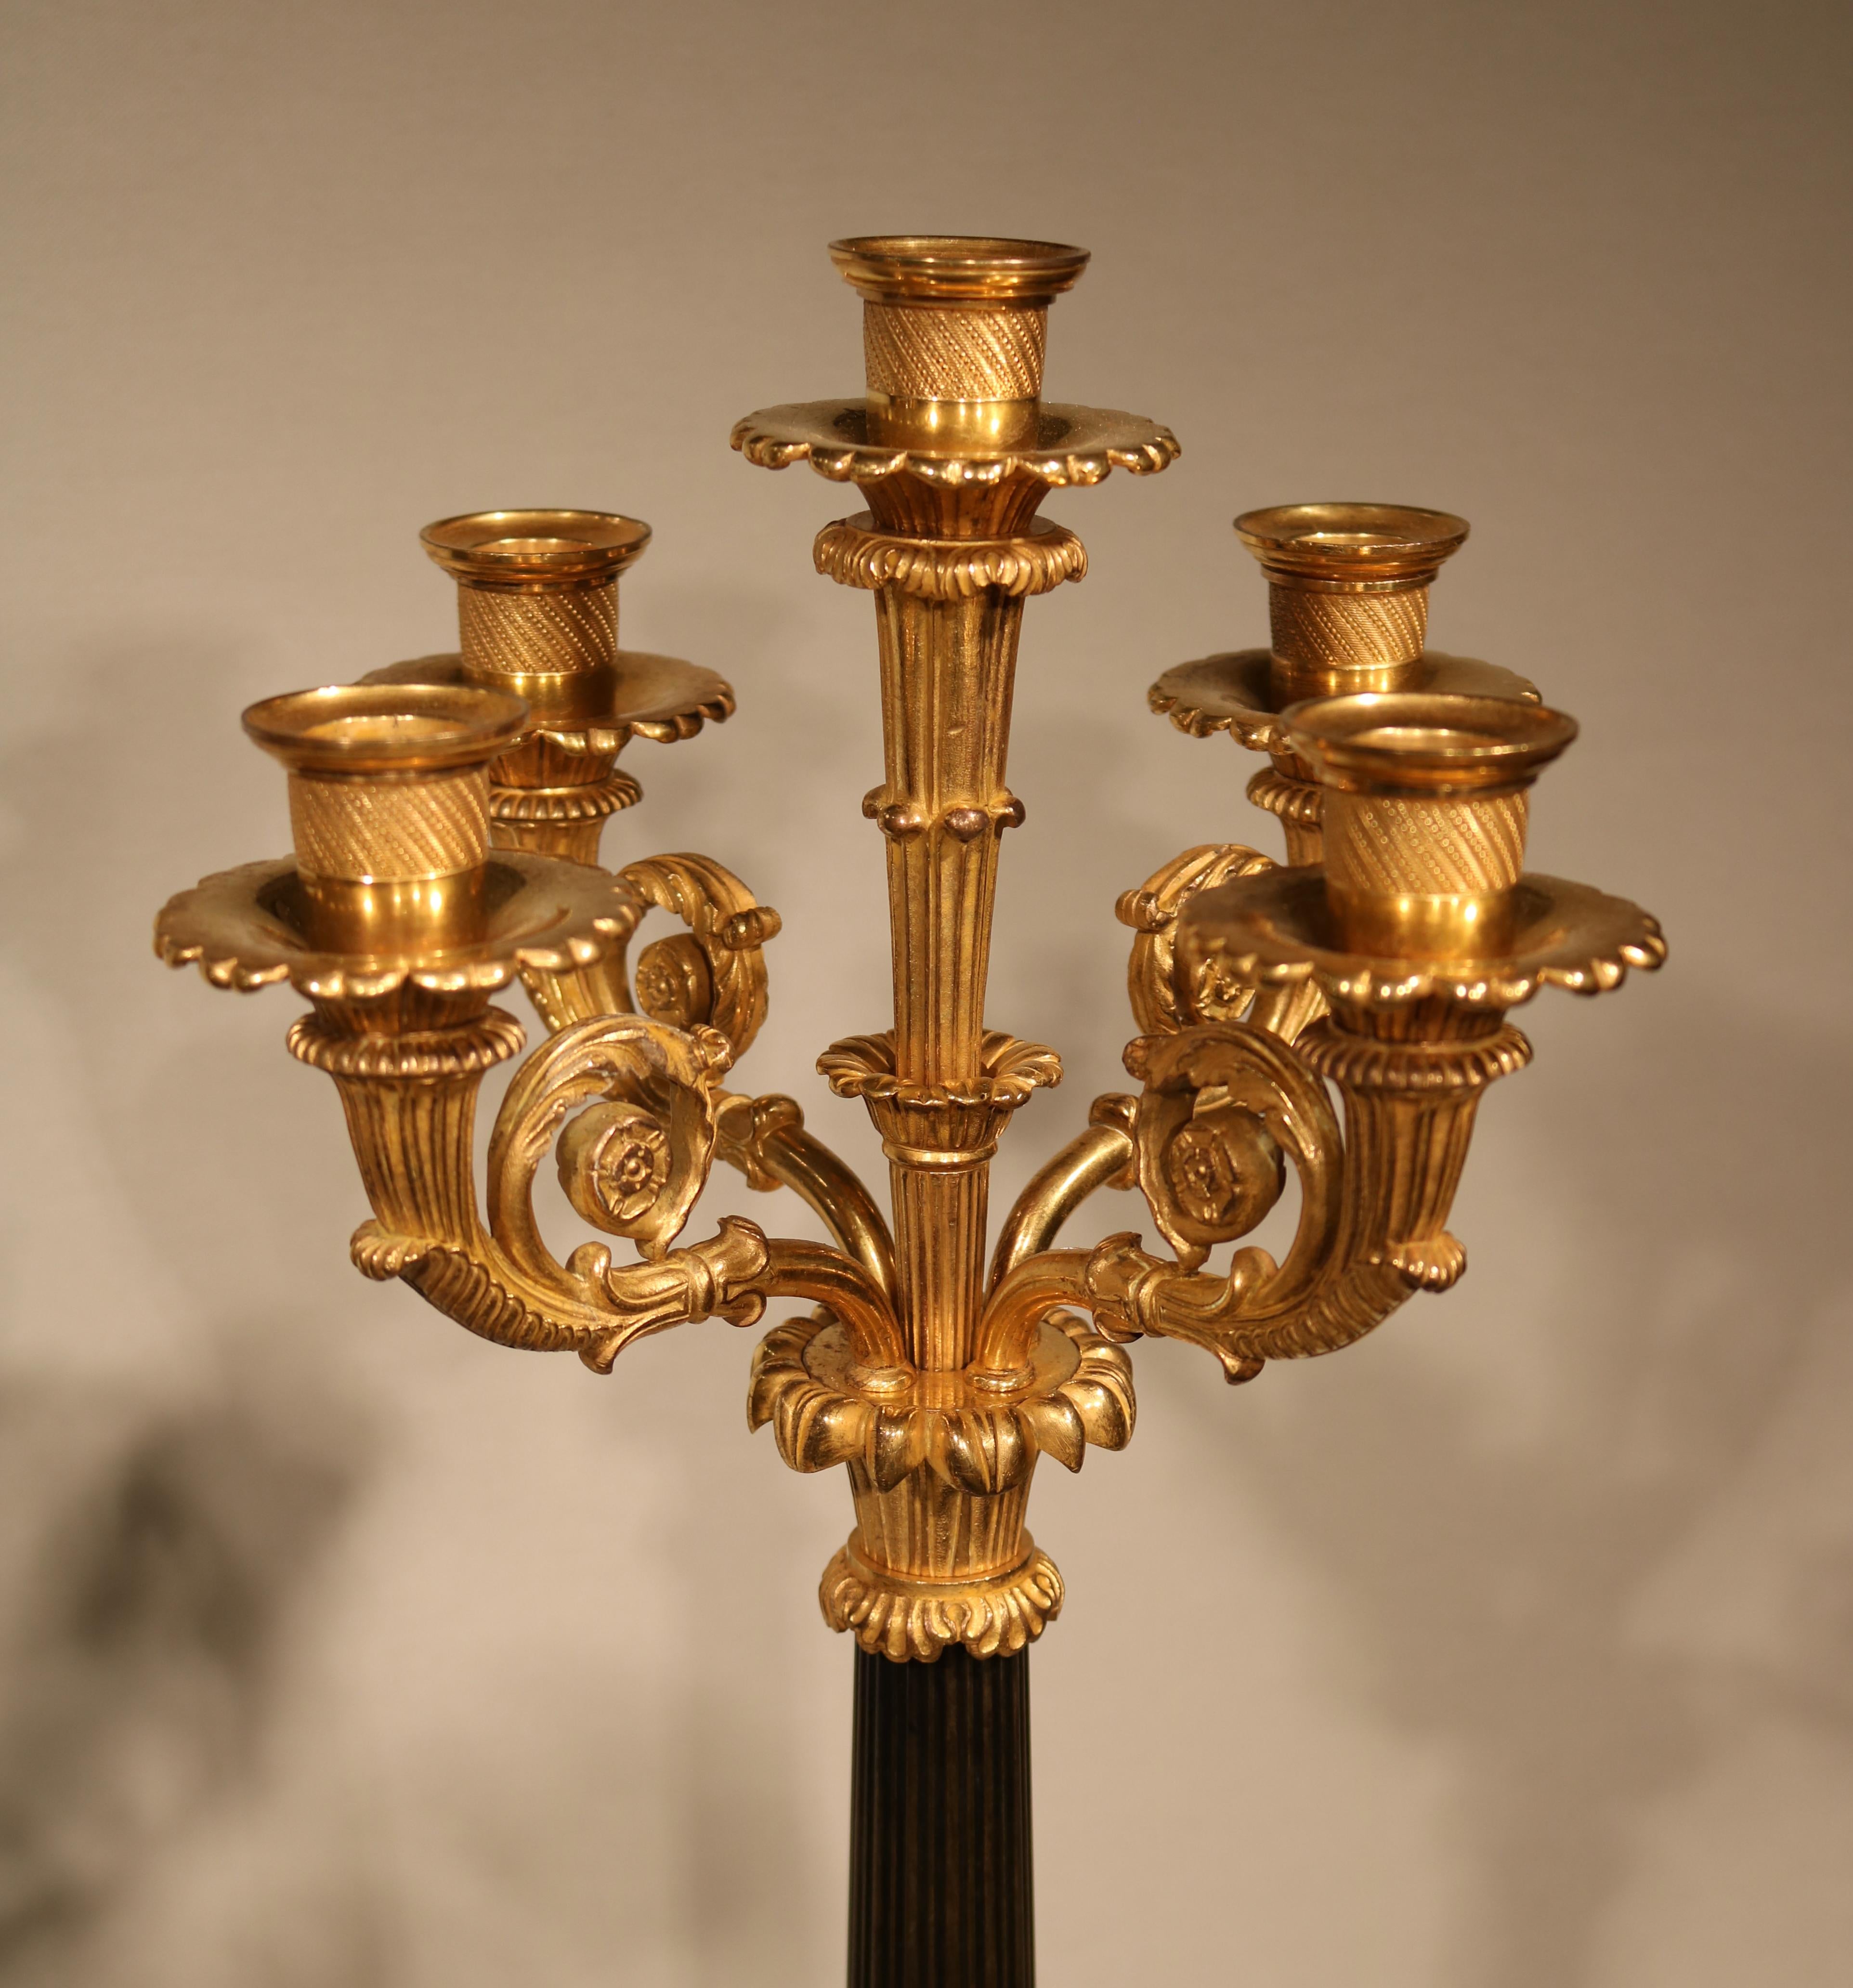 Une paire impressionnante de candélabres à 5 lumières en bronze et bronze doré du début du 19ème siècle, avec des becs tournés, des bras en forme de feuilles, soutenus par des tiges effilées en roseau avec des décorations d'acanthe, terminant sur